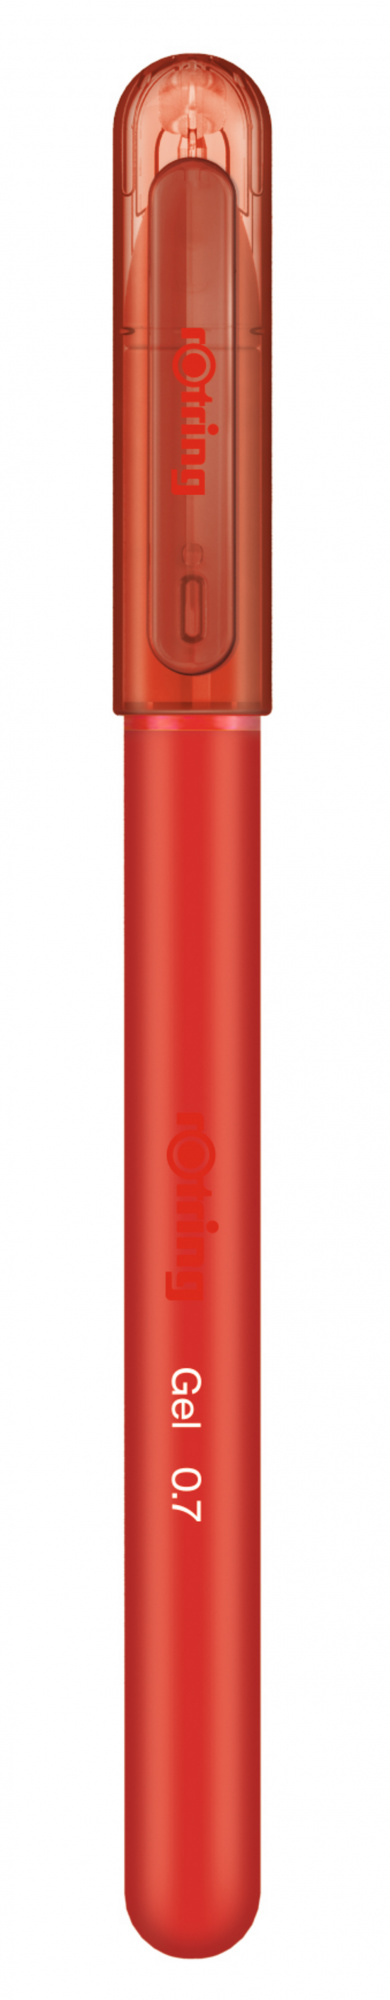 Ручка гелевая Rotring GEL 2114438, красный, колпачок (2114438)